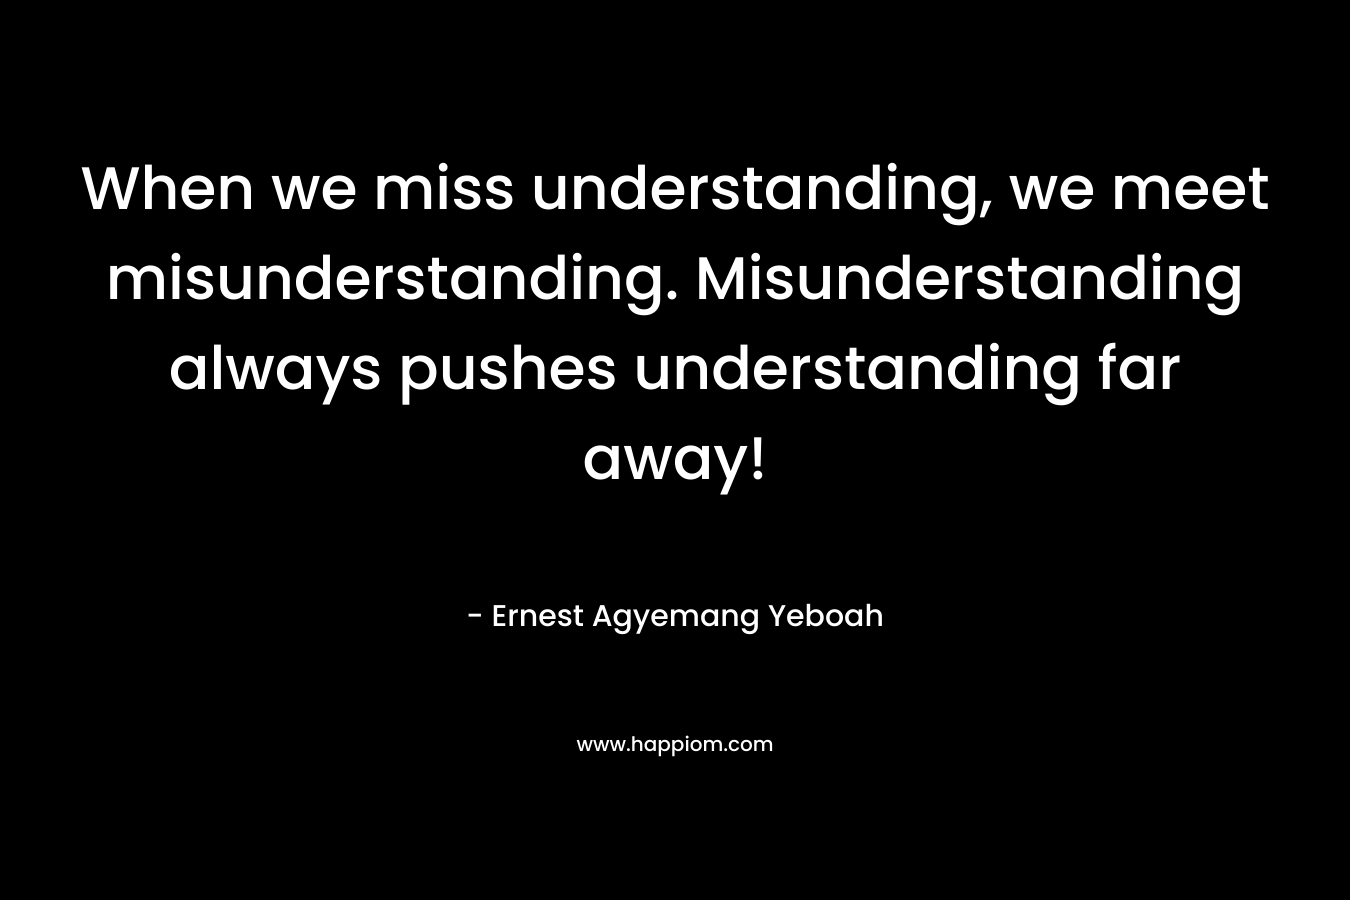 When we miss understanding, we meet misunderstanding. Misunderstanding always pushes understanding far away! – Ernest Agyemang Yeboah